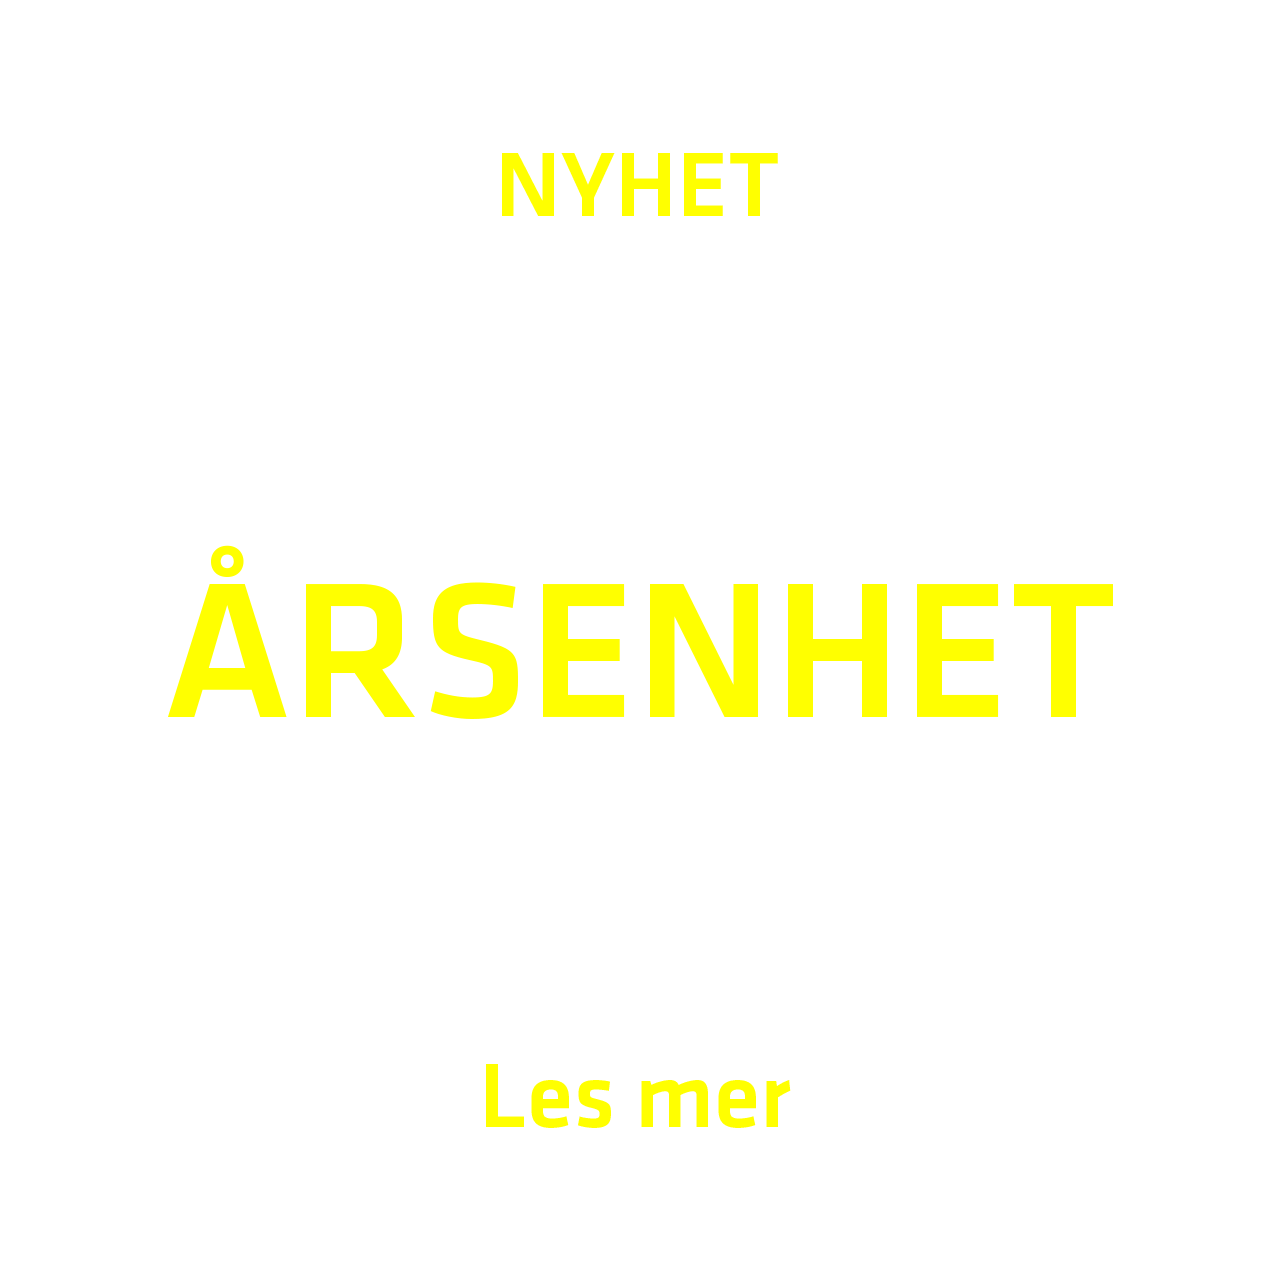 PT total